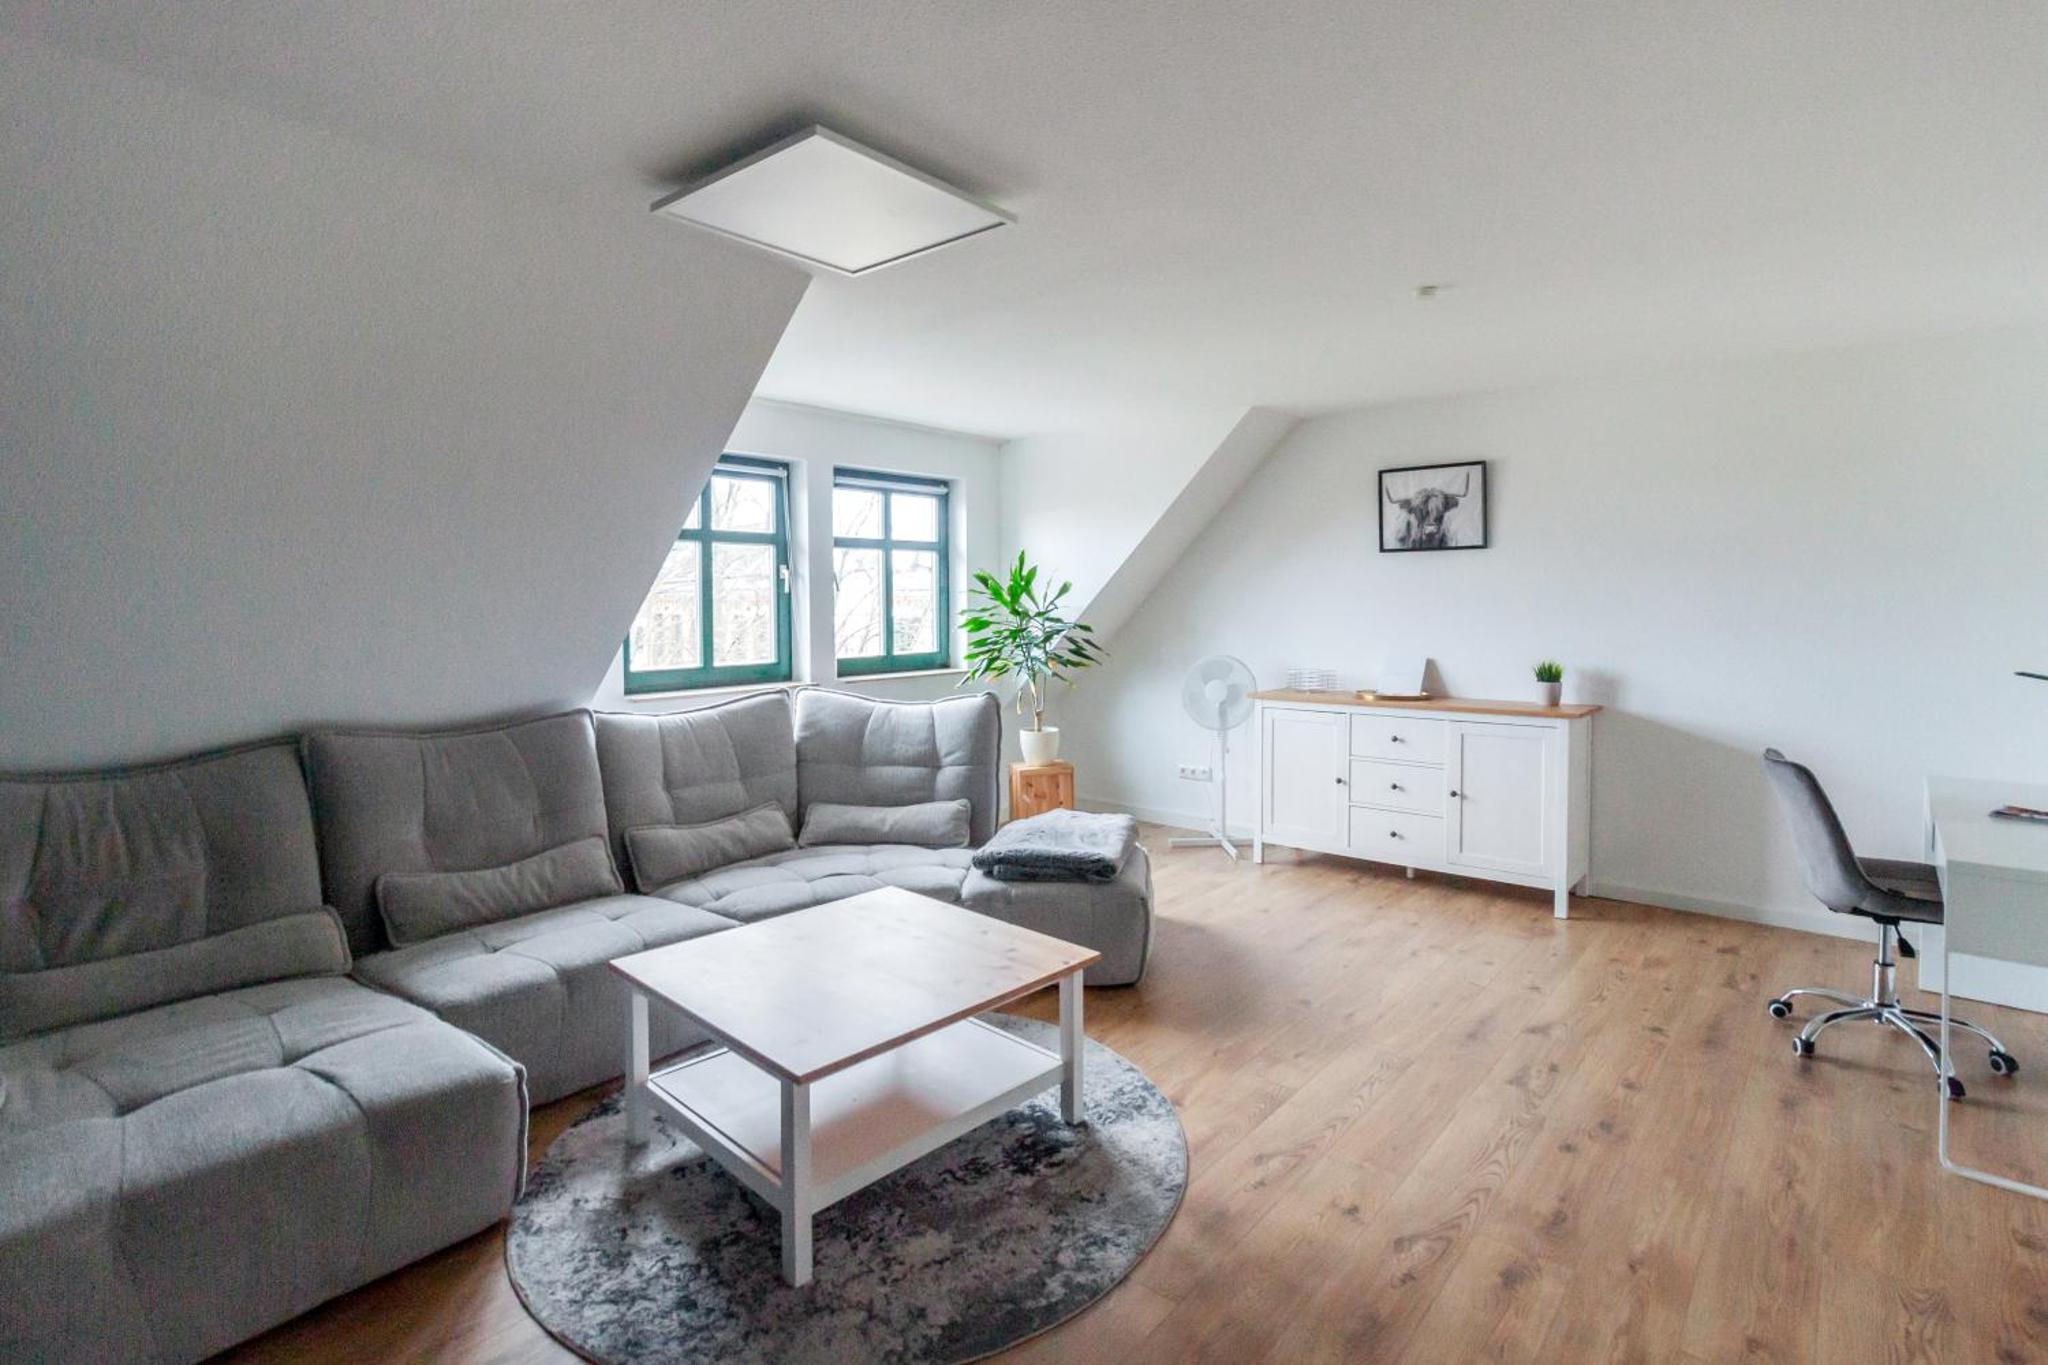 Ferienwohnung "Kapellmeister" mit Klimaanlage in allen 4 Schlafbereichen, großes Wohnzimmer mit Smart TV und Big Sofa